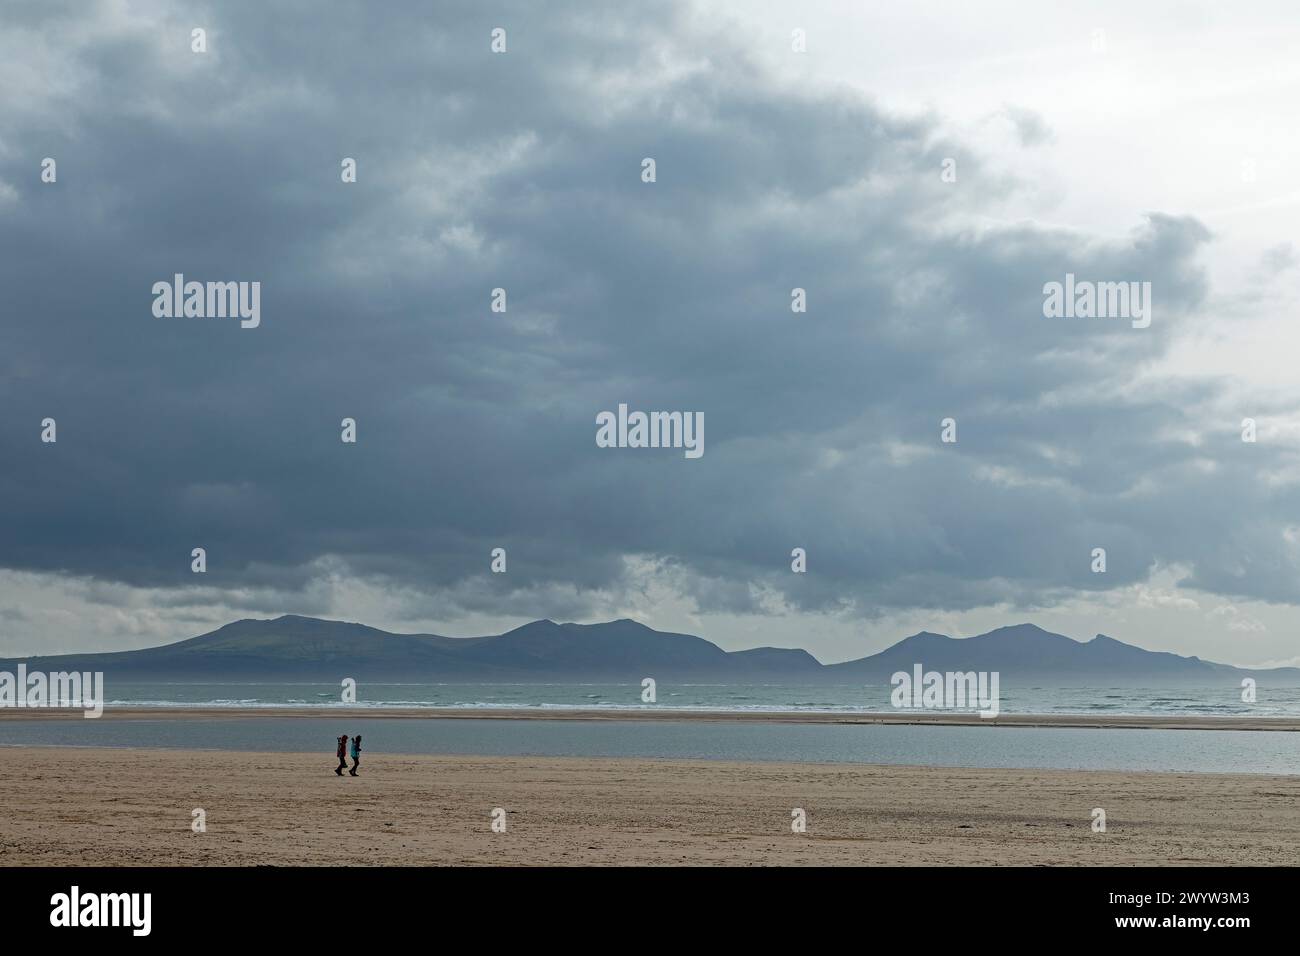 Plage, gens, nuages, montagnes, baie de LLanddwyn, Newborough, Anglesey Island, pays de Galles, Grande-Bretagne Banque D'Images